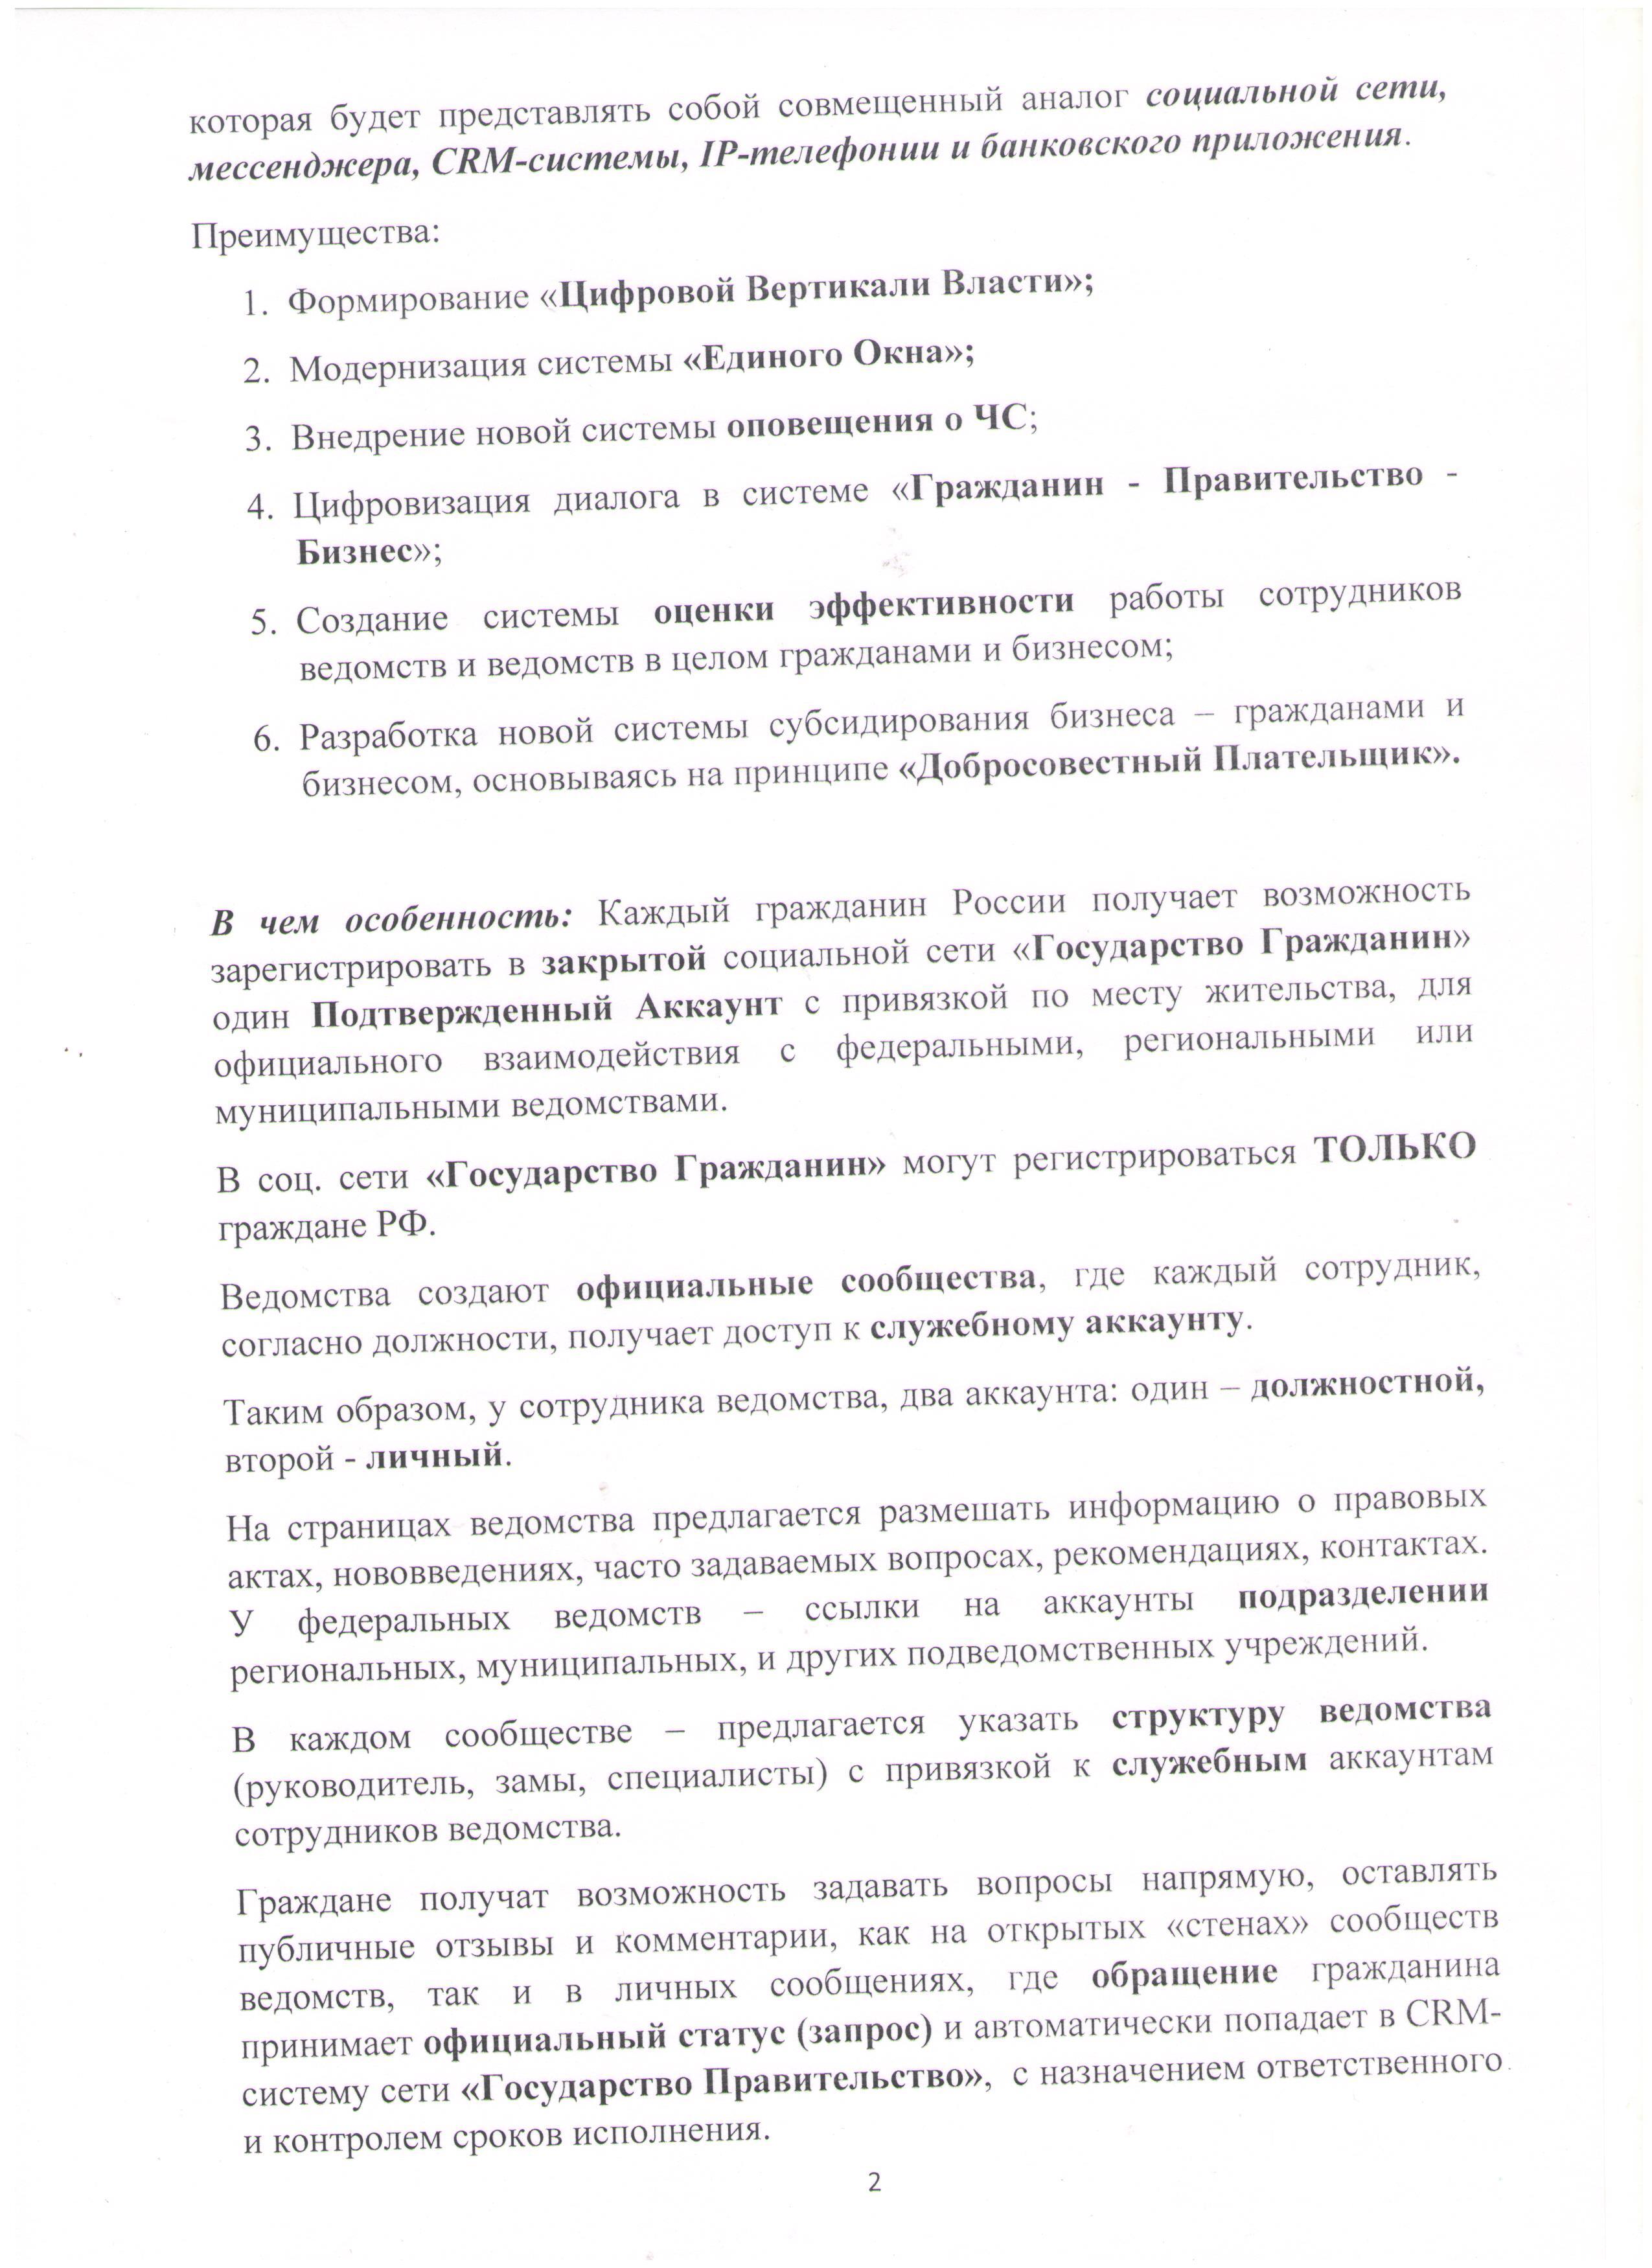  Открытое письмо Президенту РФ Лист 2